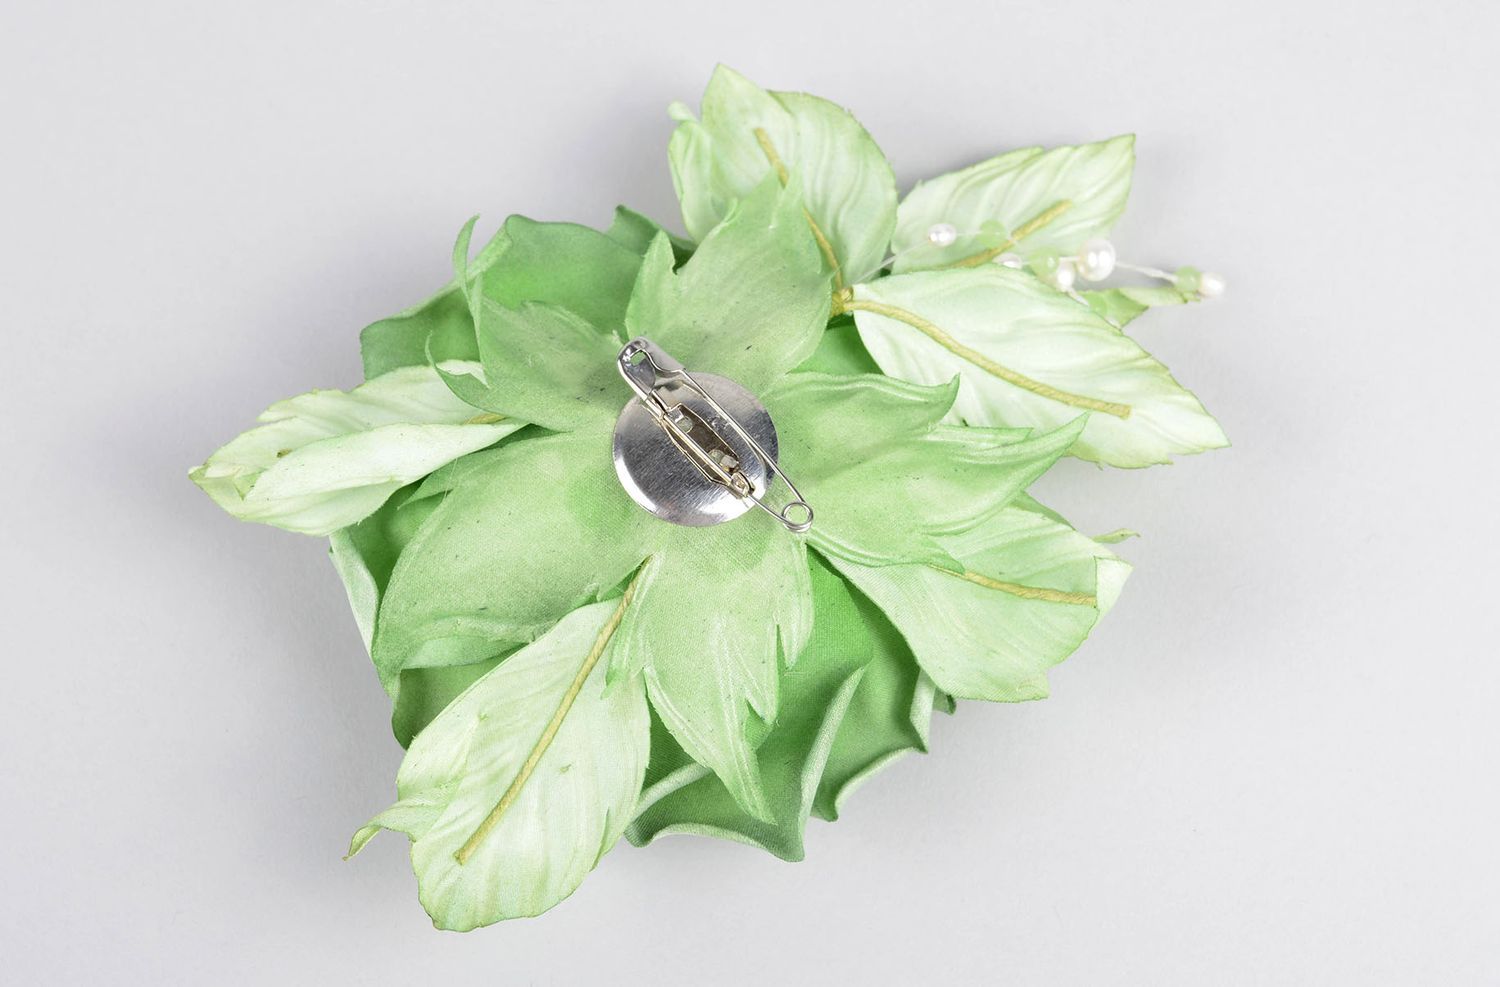 Брошь ручной работы зеленая брошь-цветок авторское дизайнерское украшение фото 4